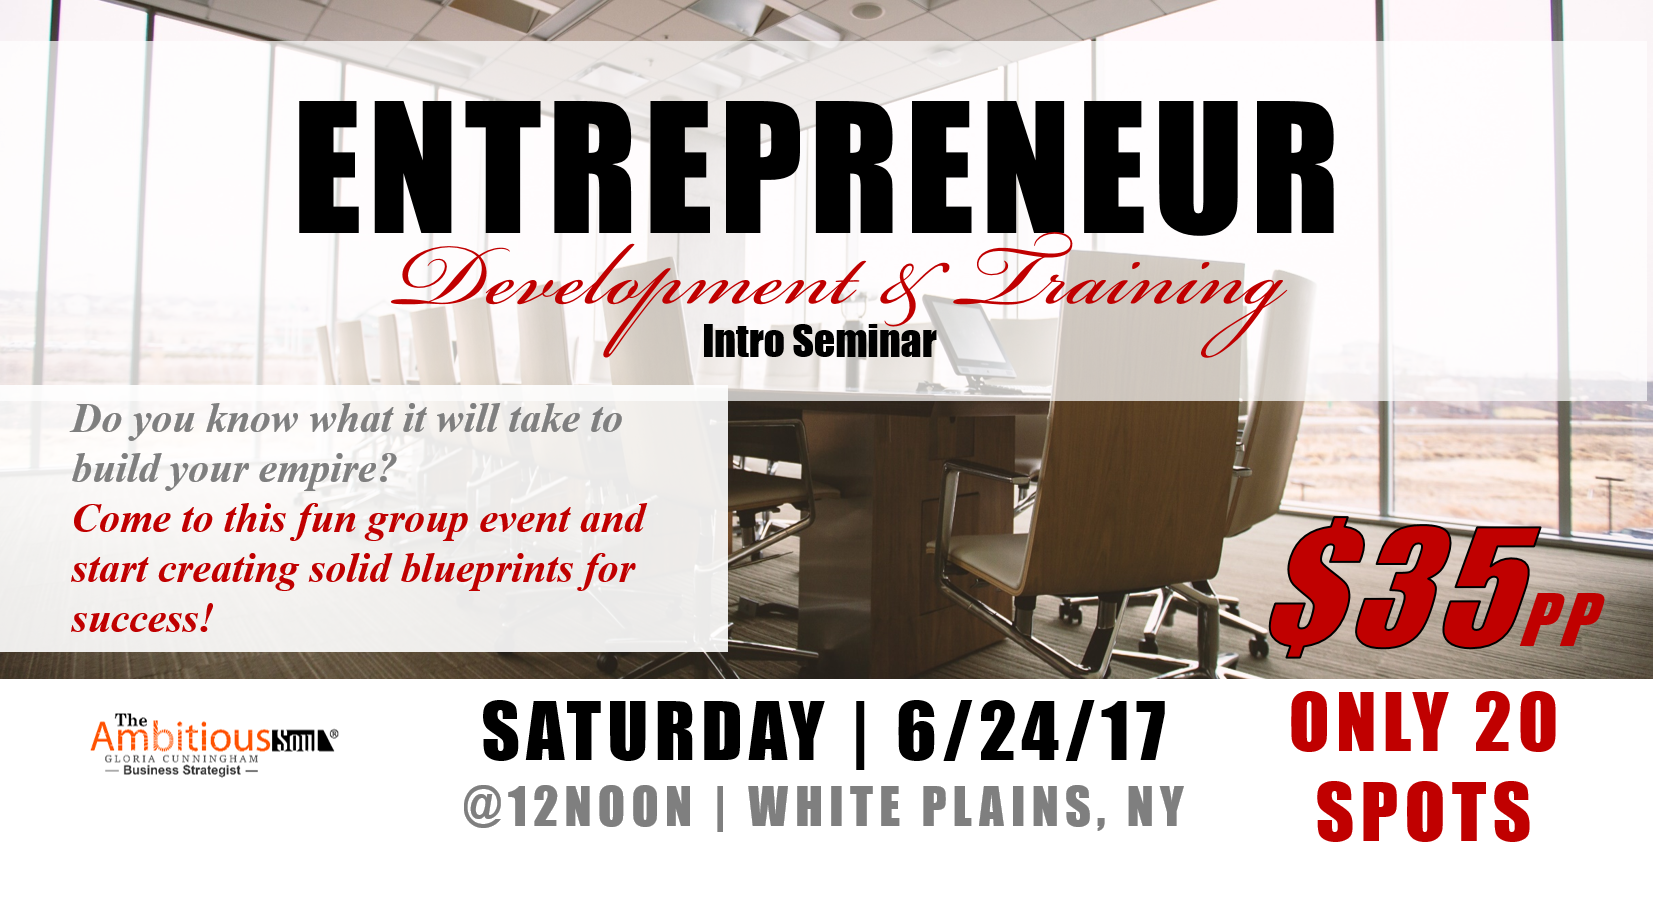 Entrepreneur Development & Training 